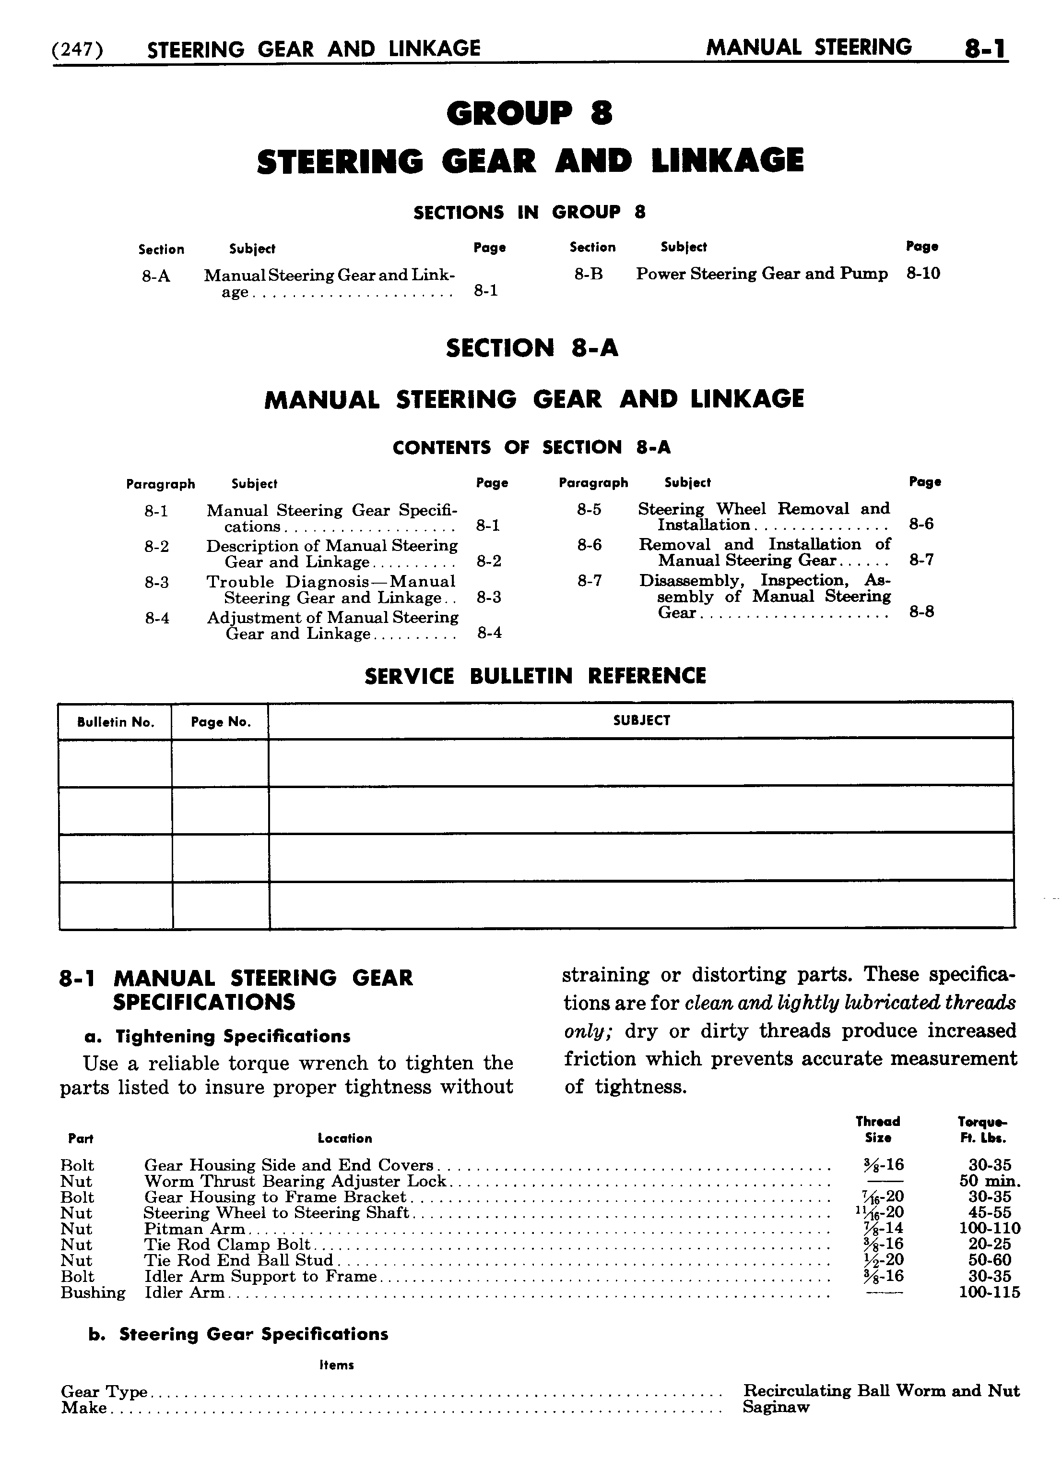 n_09 1955 Buick Shop Manual - Steering-001-001.jpg